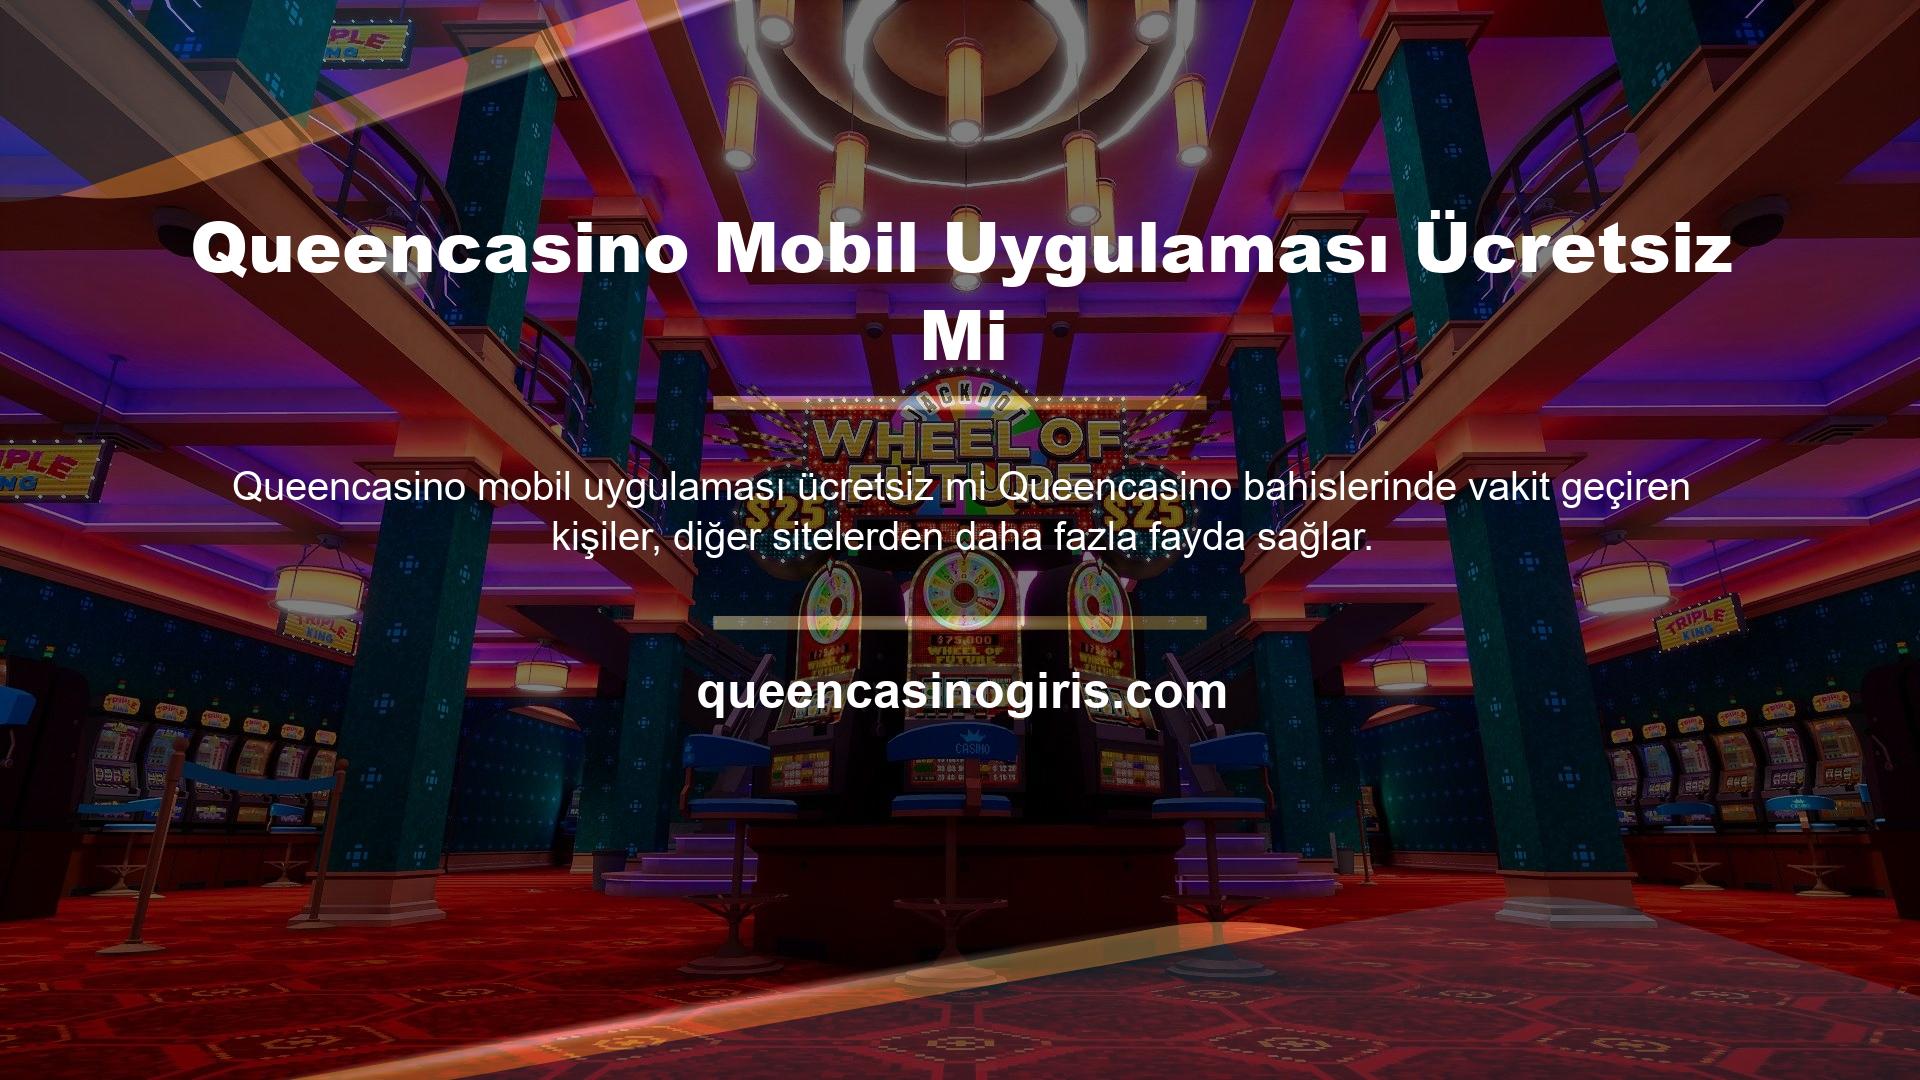 Çünkü diğer mobil site uygulamaları ücretli iken Queencasino mobil uygulaması casino tutkunlarına ücretsiz olarak yararlanma imkanı sunmaktadır